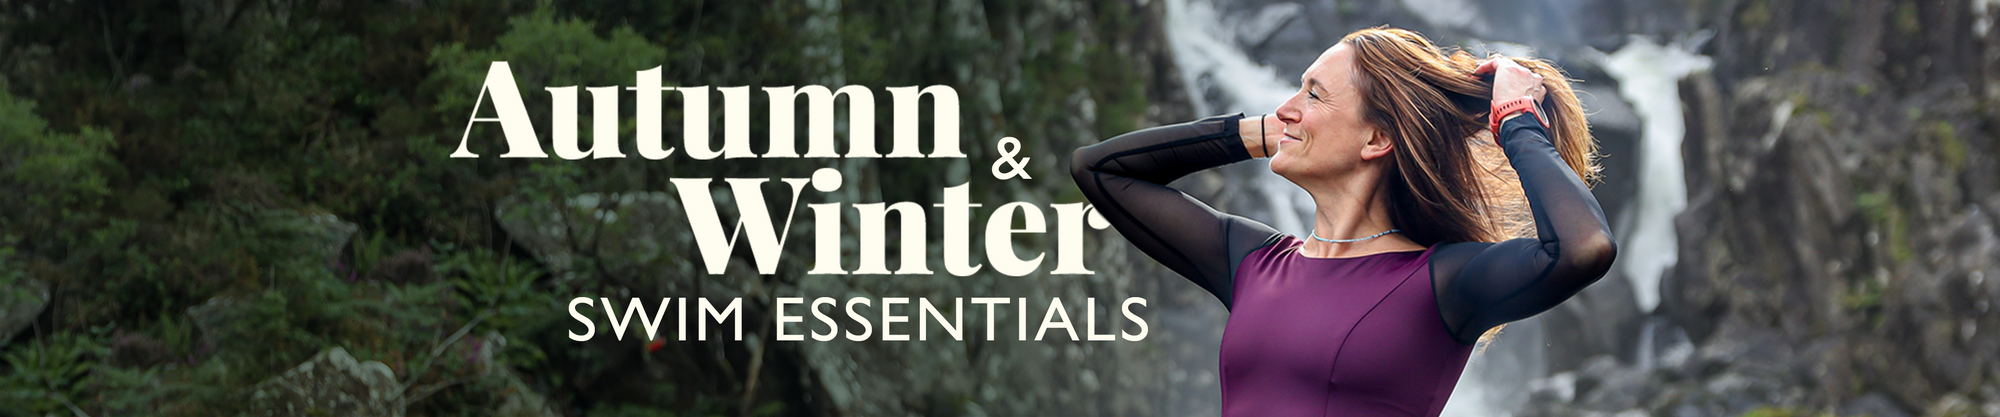 Autumn & Winter Swim Essentials